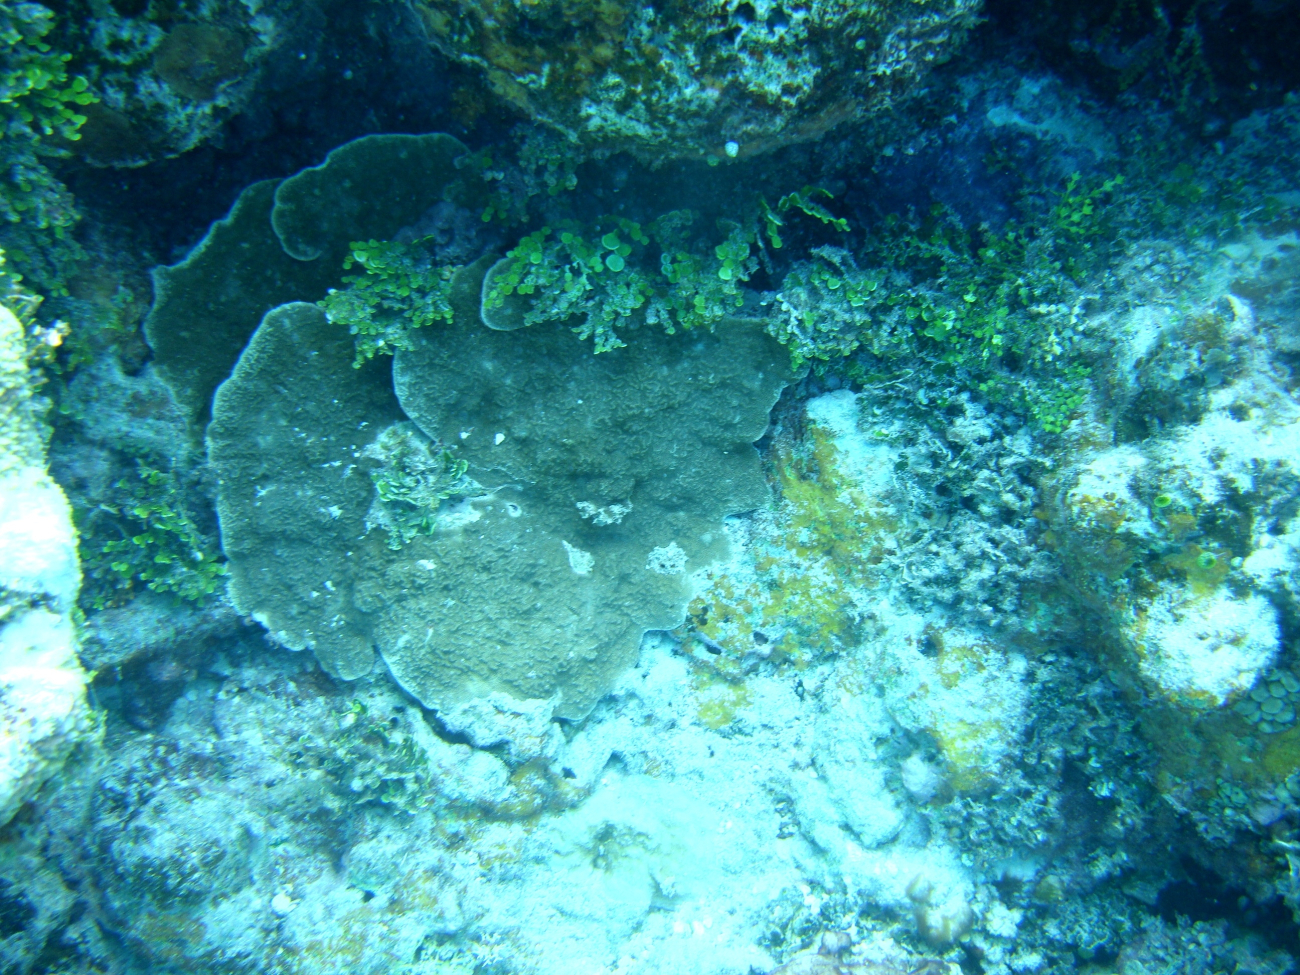 Acroporidae coral